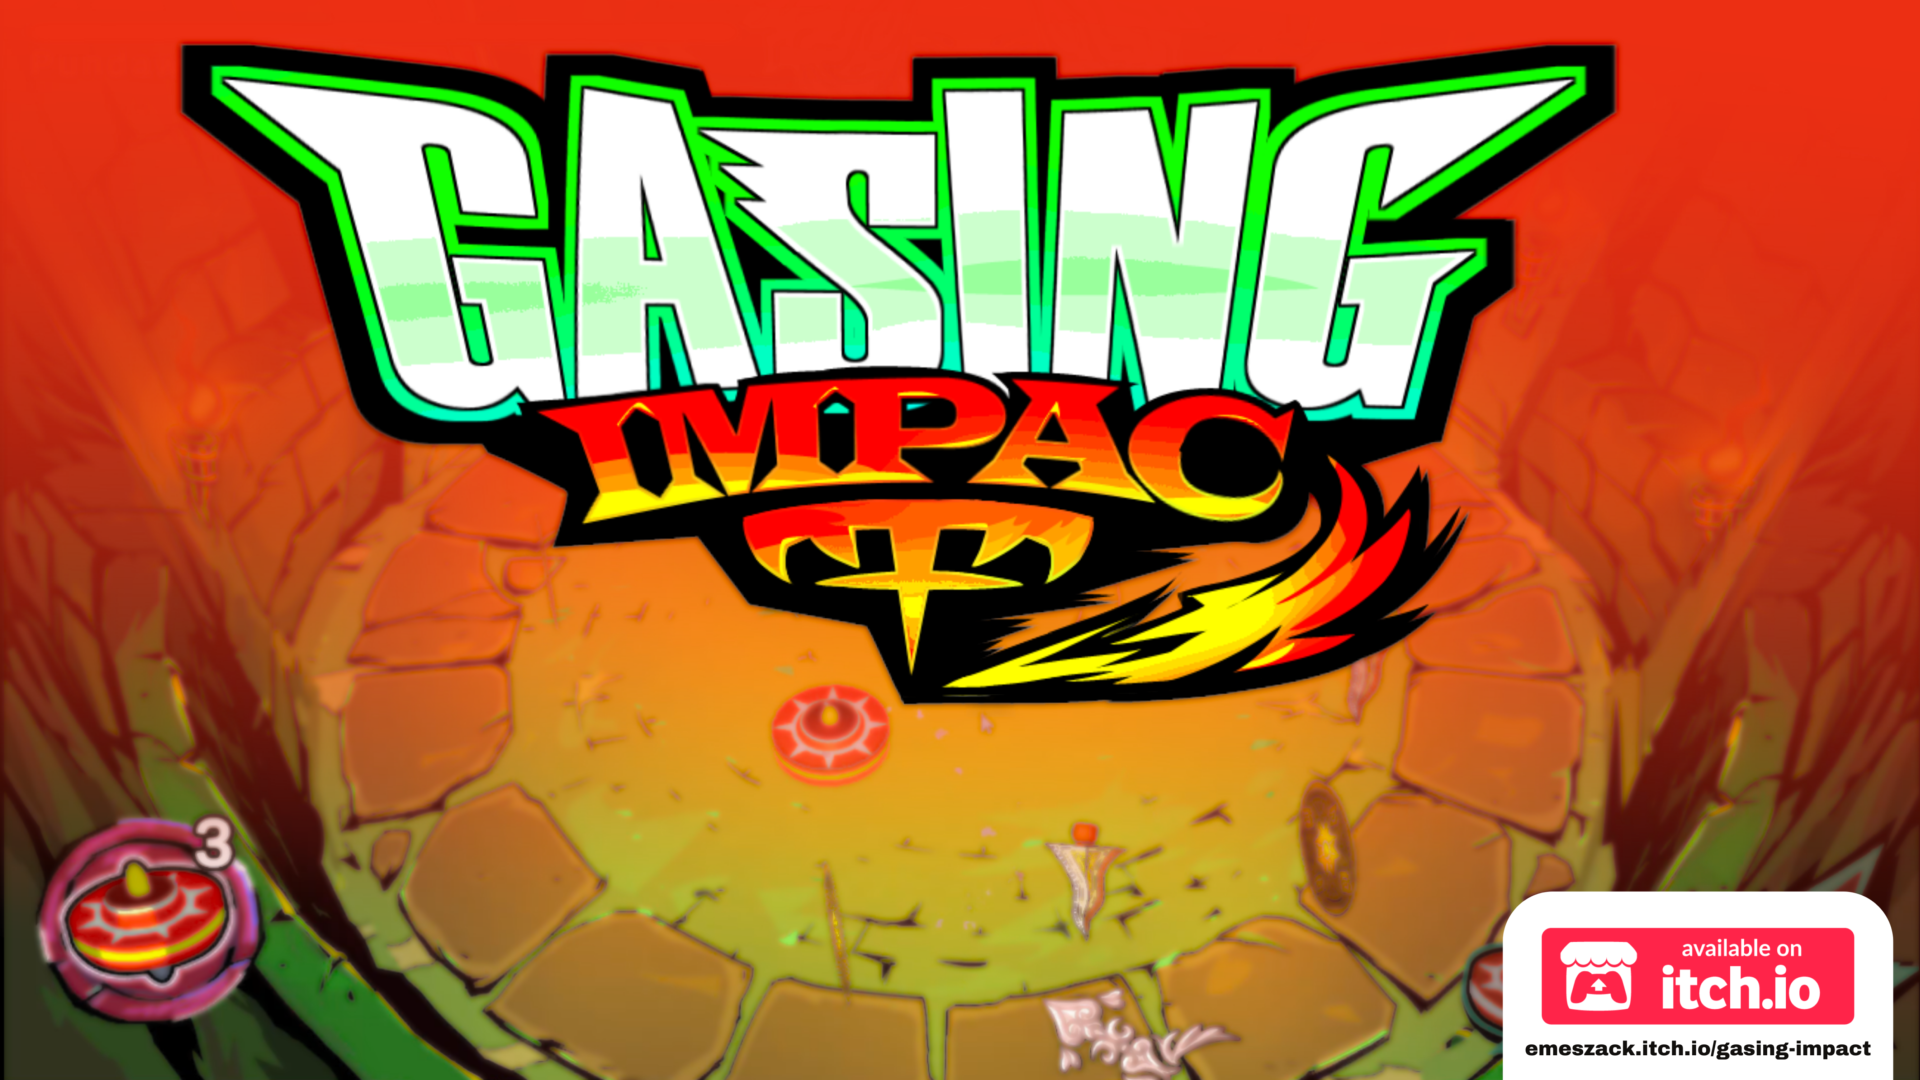 Gasing Impact